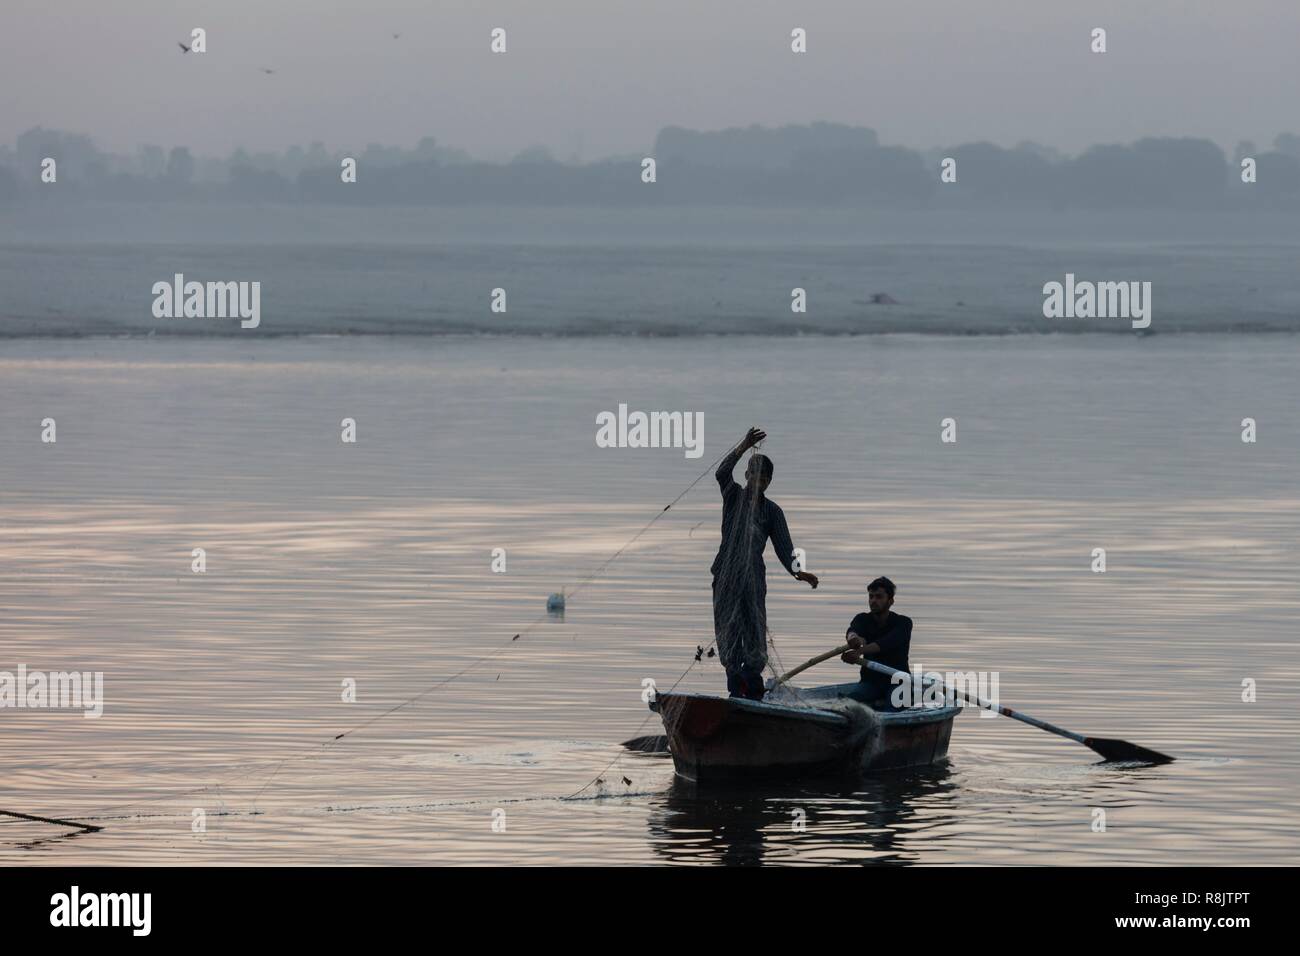 L'Inde, Uttar Pradesh, Varanasi, deux pêcheurs dans une barque sur la rivière Ganga Banque D'Images